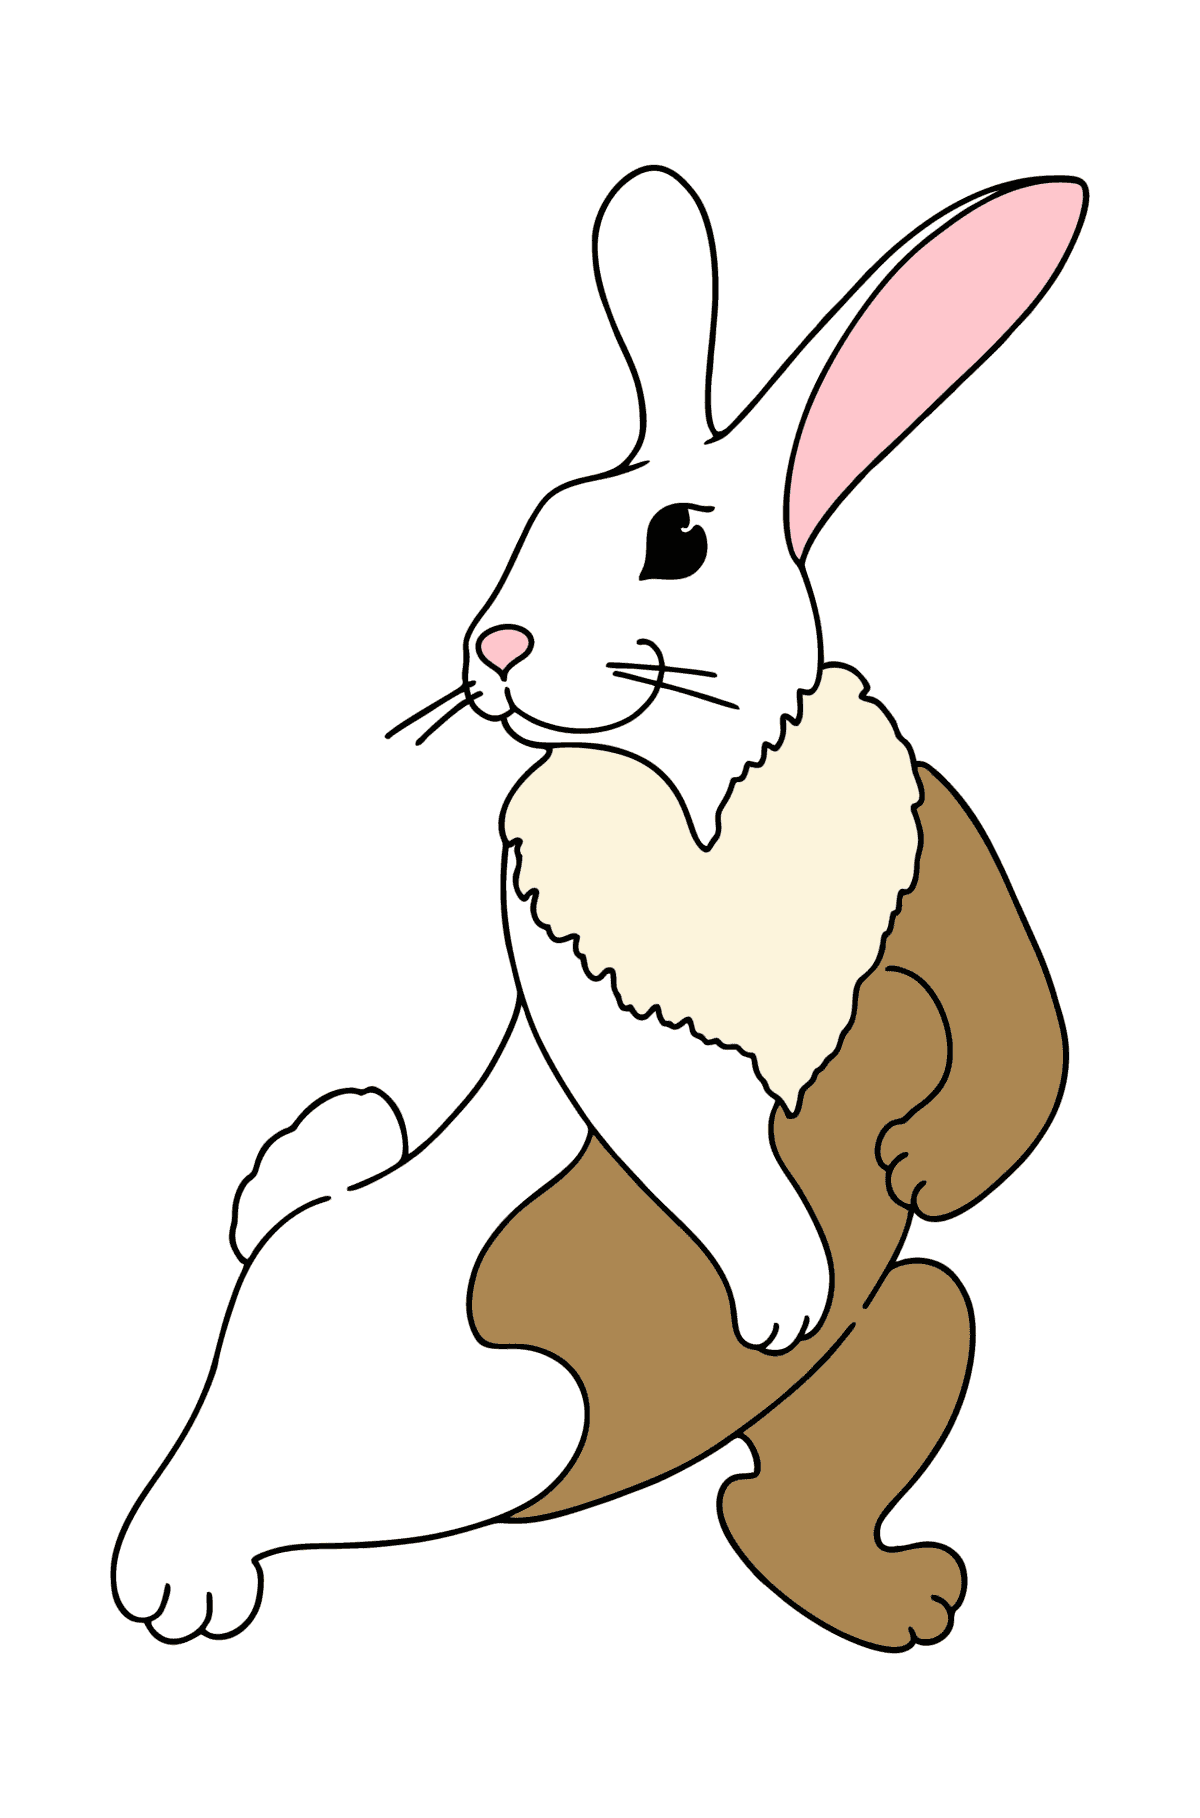 Tegning til fargelegging leken kanin - Tegninger til fargelegging for barn